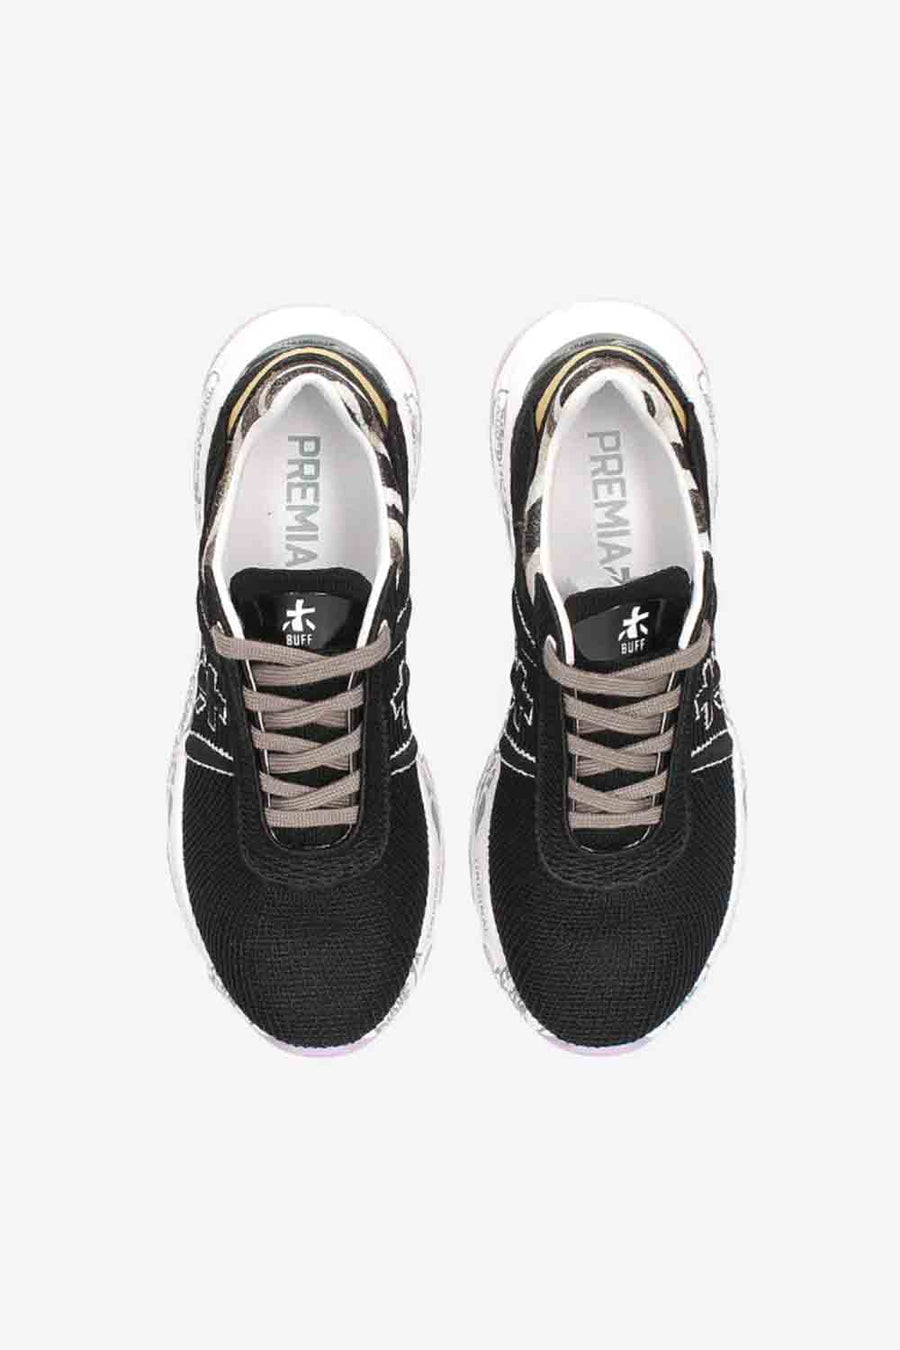 Sneakers Premiata color nero buff 6208